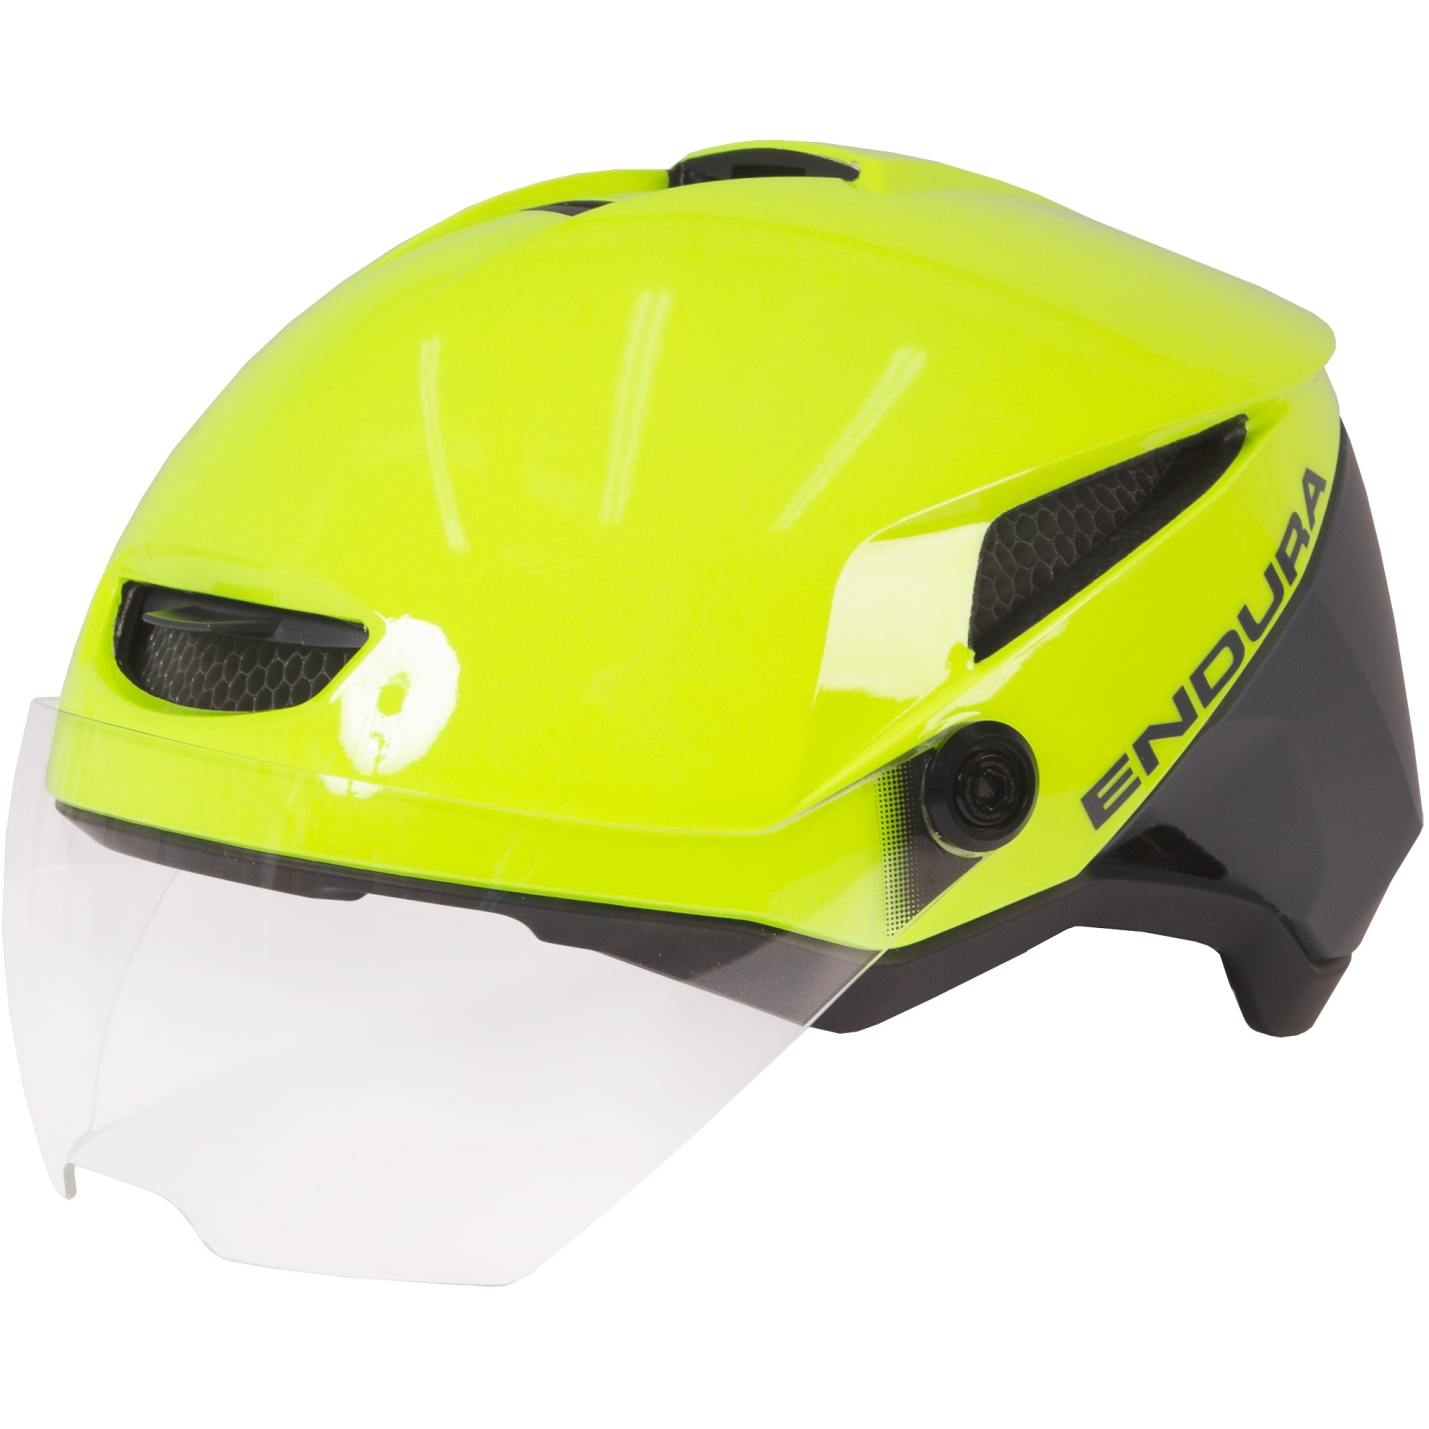 Produktbild von Endura Speed Pedelec Helm - neon-gelb